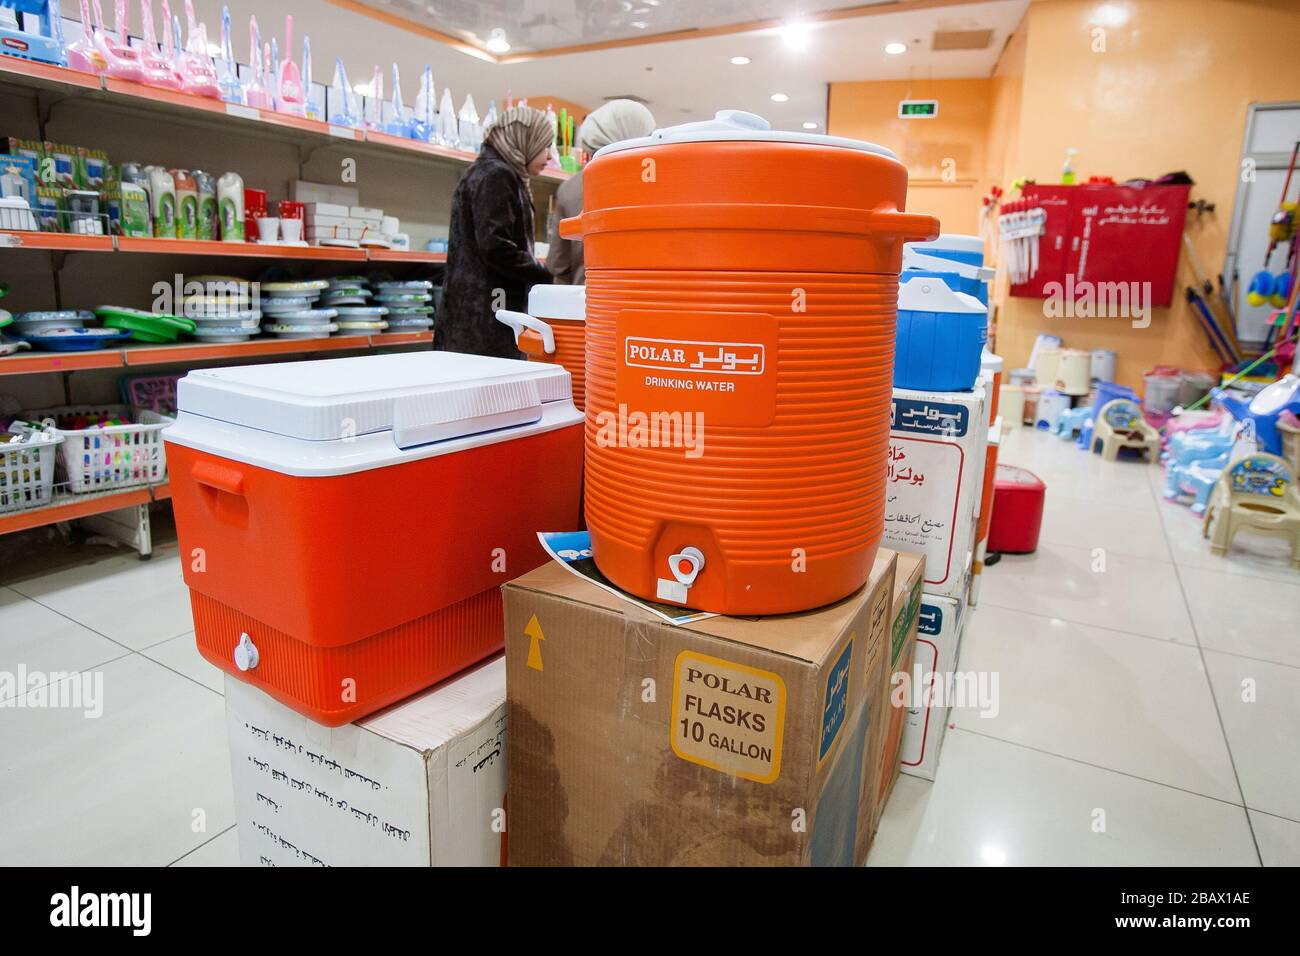 Amman, Jordan, May 1, 2009: Drinking water cooler tanks on sale in a store in Amman, Jordan. Stock Photo